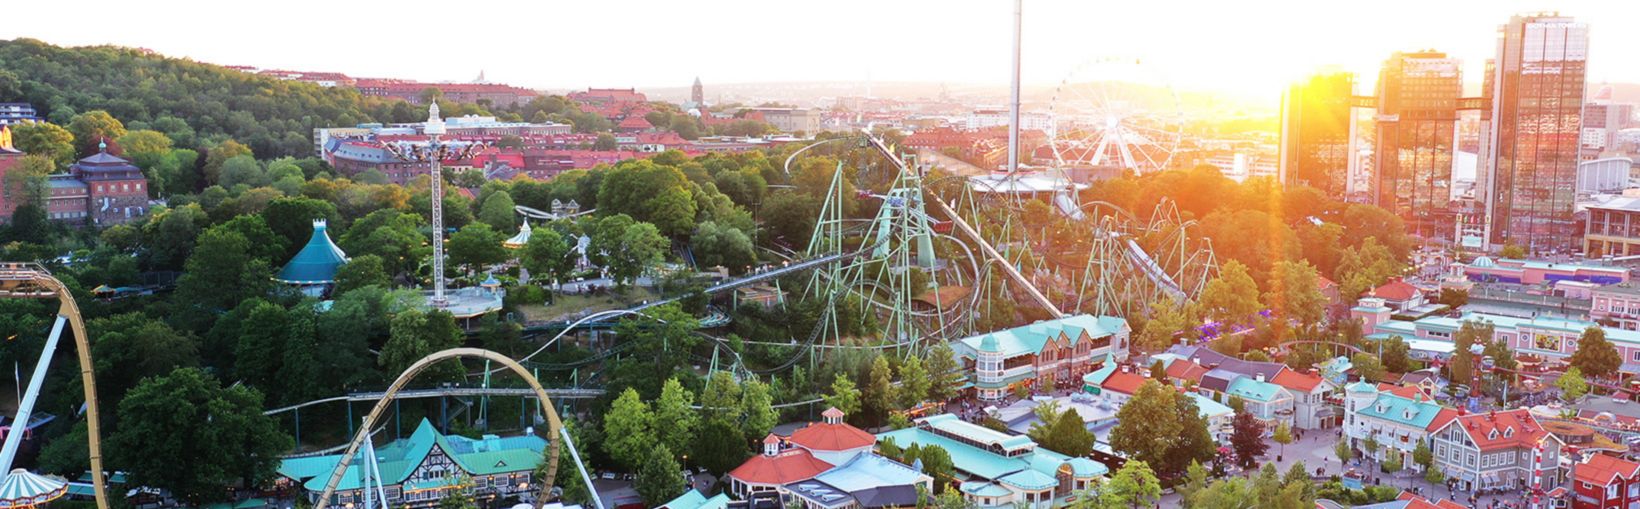 Luftfoto af feriestedet Liseberg